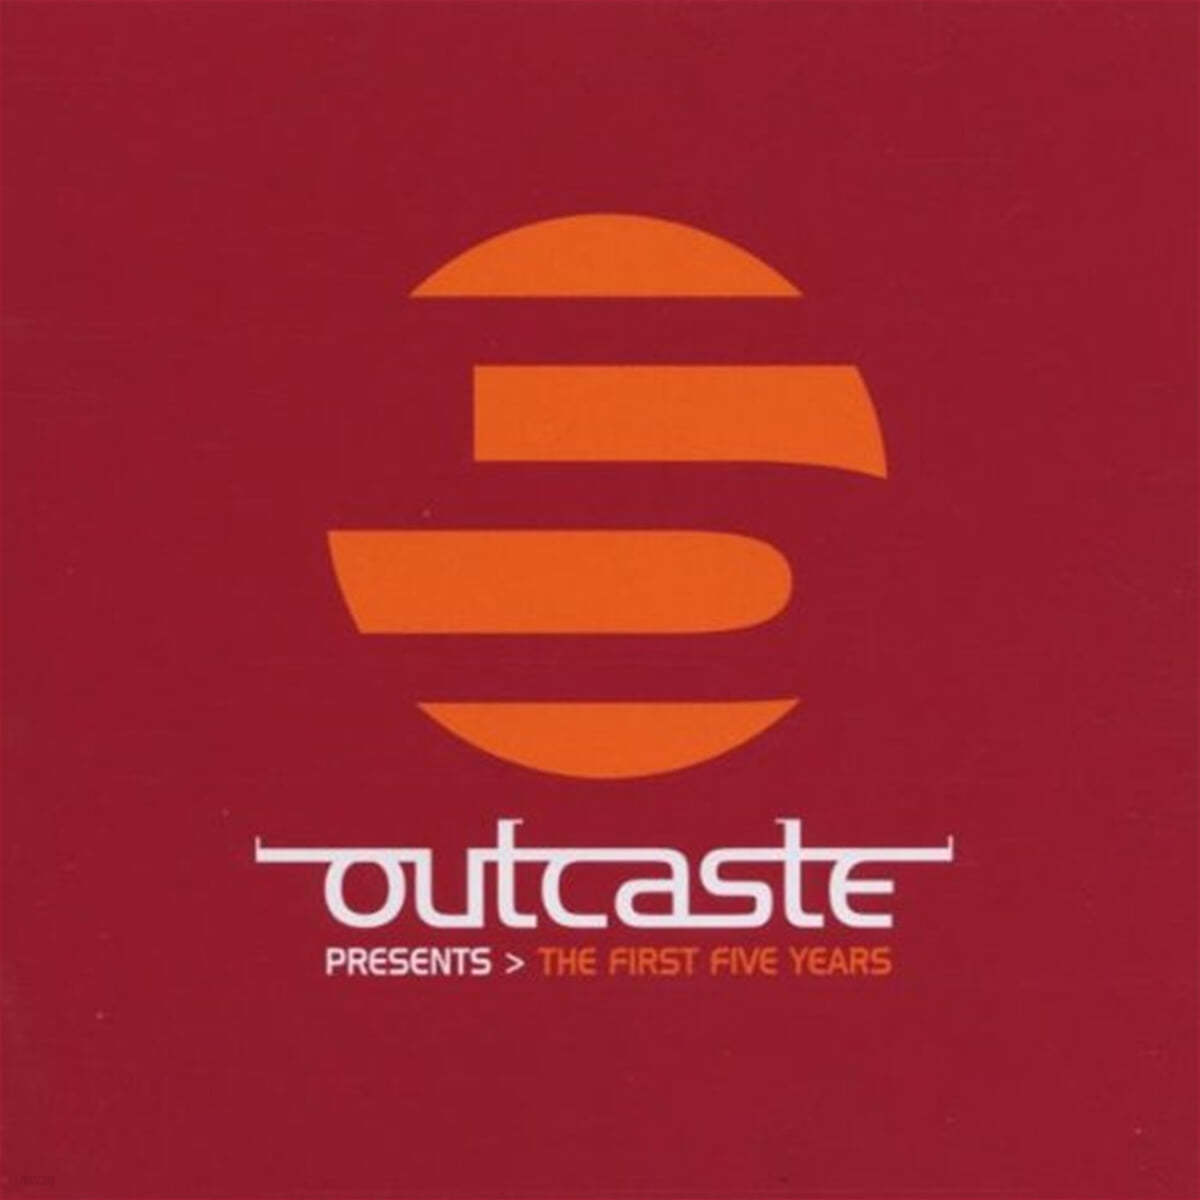 일렉트로닉 컴필레이션 - 아웃캐스트 프레젠트 (Outcaste Presents > The First Five Years) 